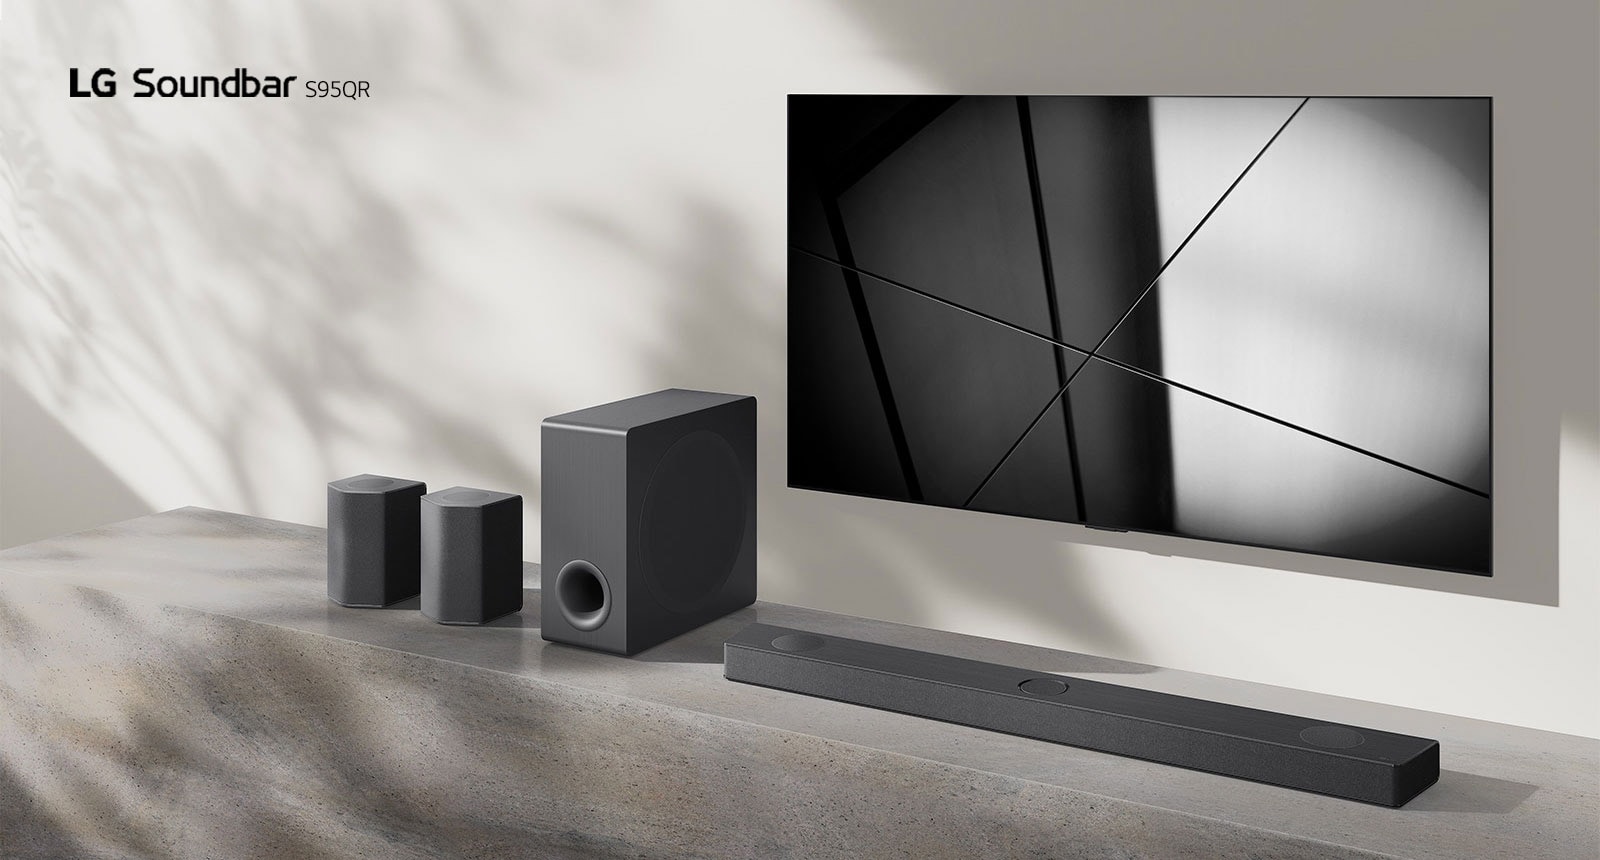 LG Sound Bar S95QR i LG TV postavljeni su zajedno u dnevnoj sobi. Televizor je uključen i prikazuje se crno-bela slika.